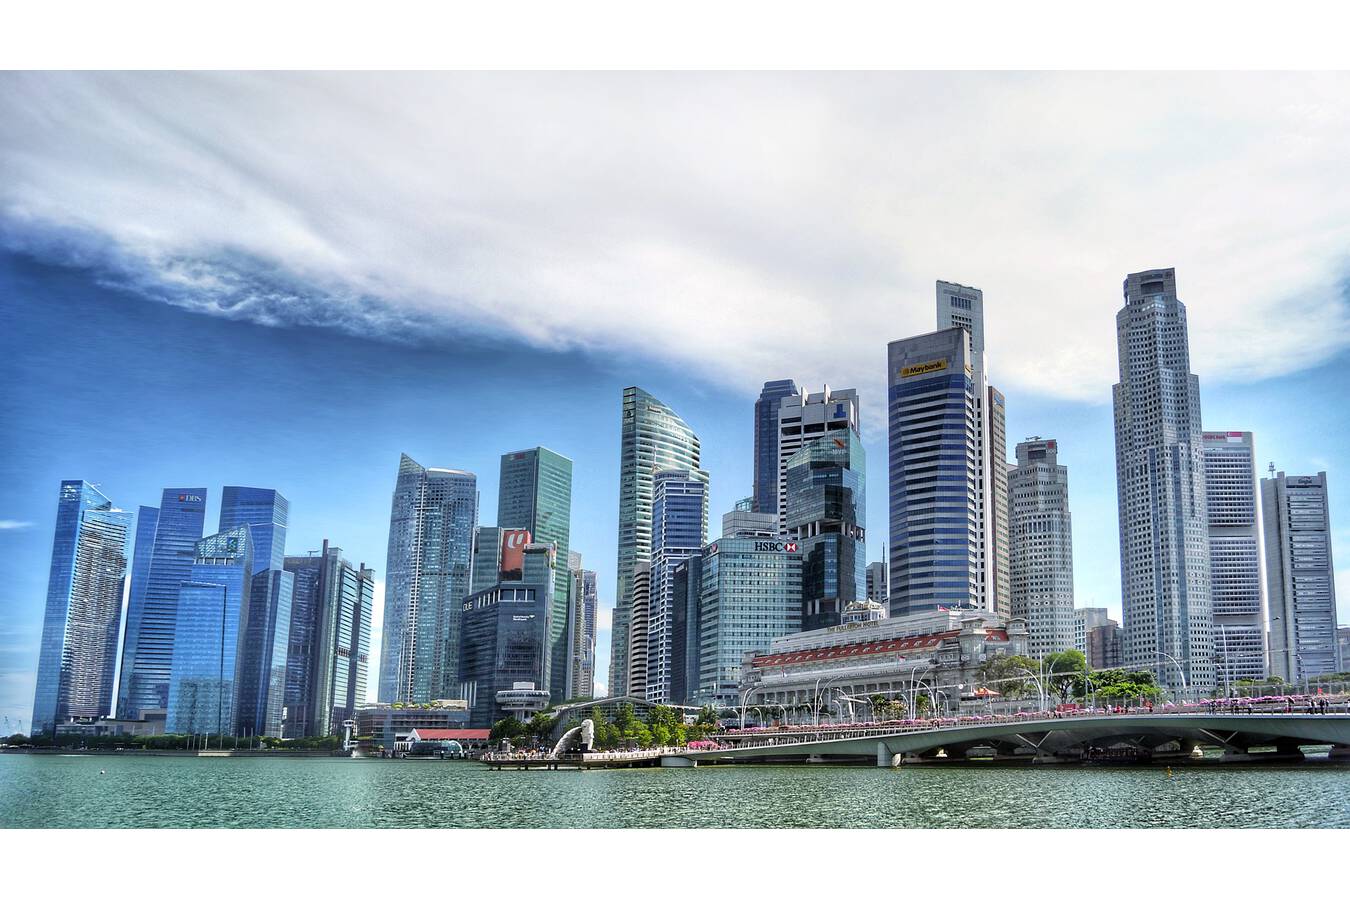 Bild 2: In den Hochhäusern von Singapur sind Unmengen von Beton verbaut. Aber ohne Sand, kein Beton. (Quelle: Pixabay)